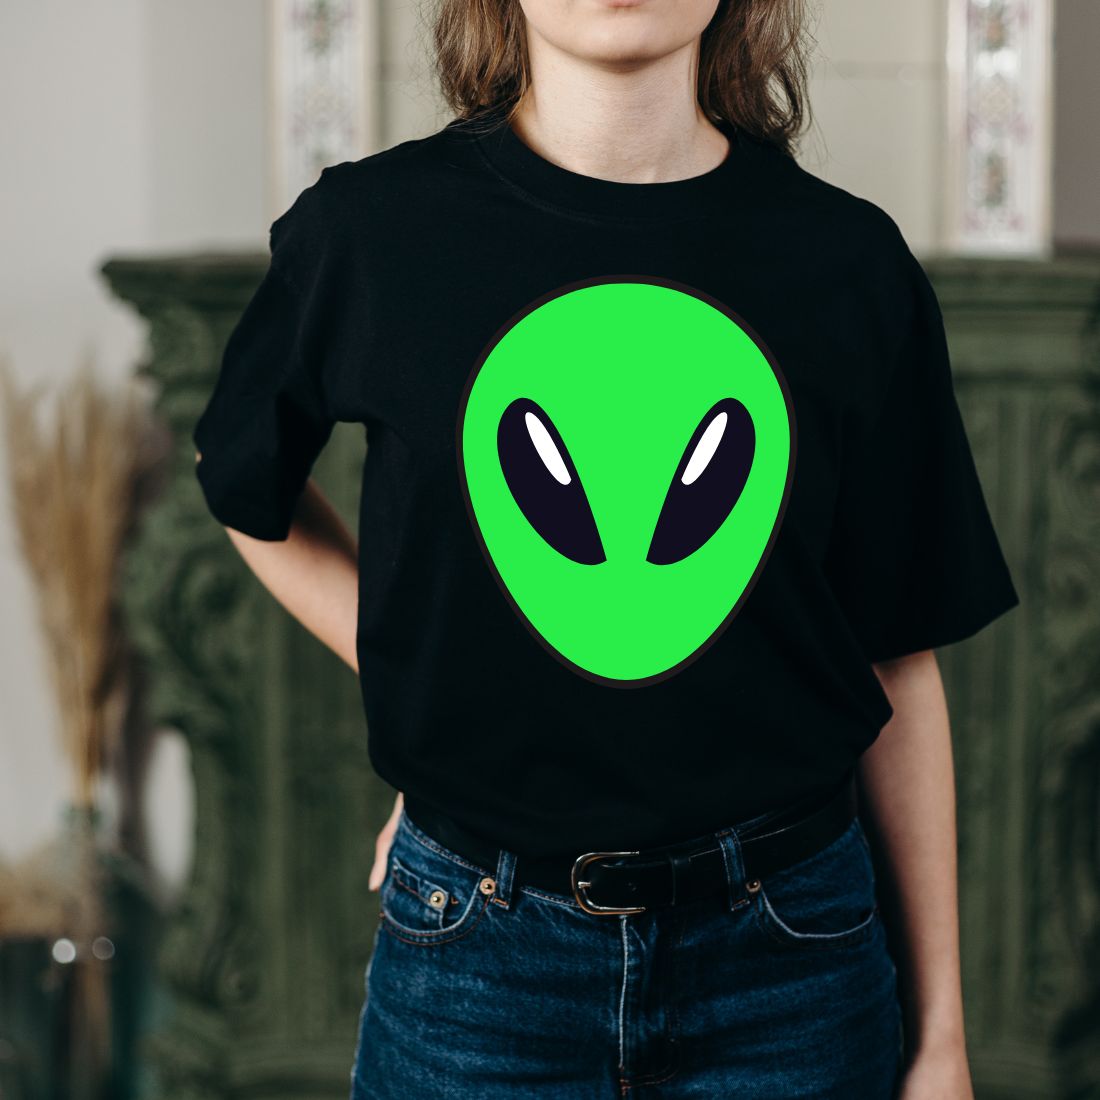 Alien Face design t-shirt preview image.